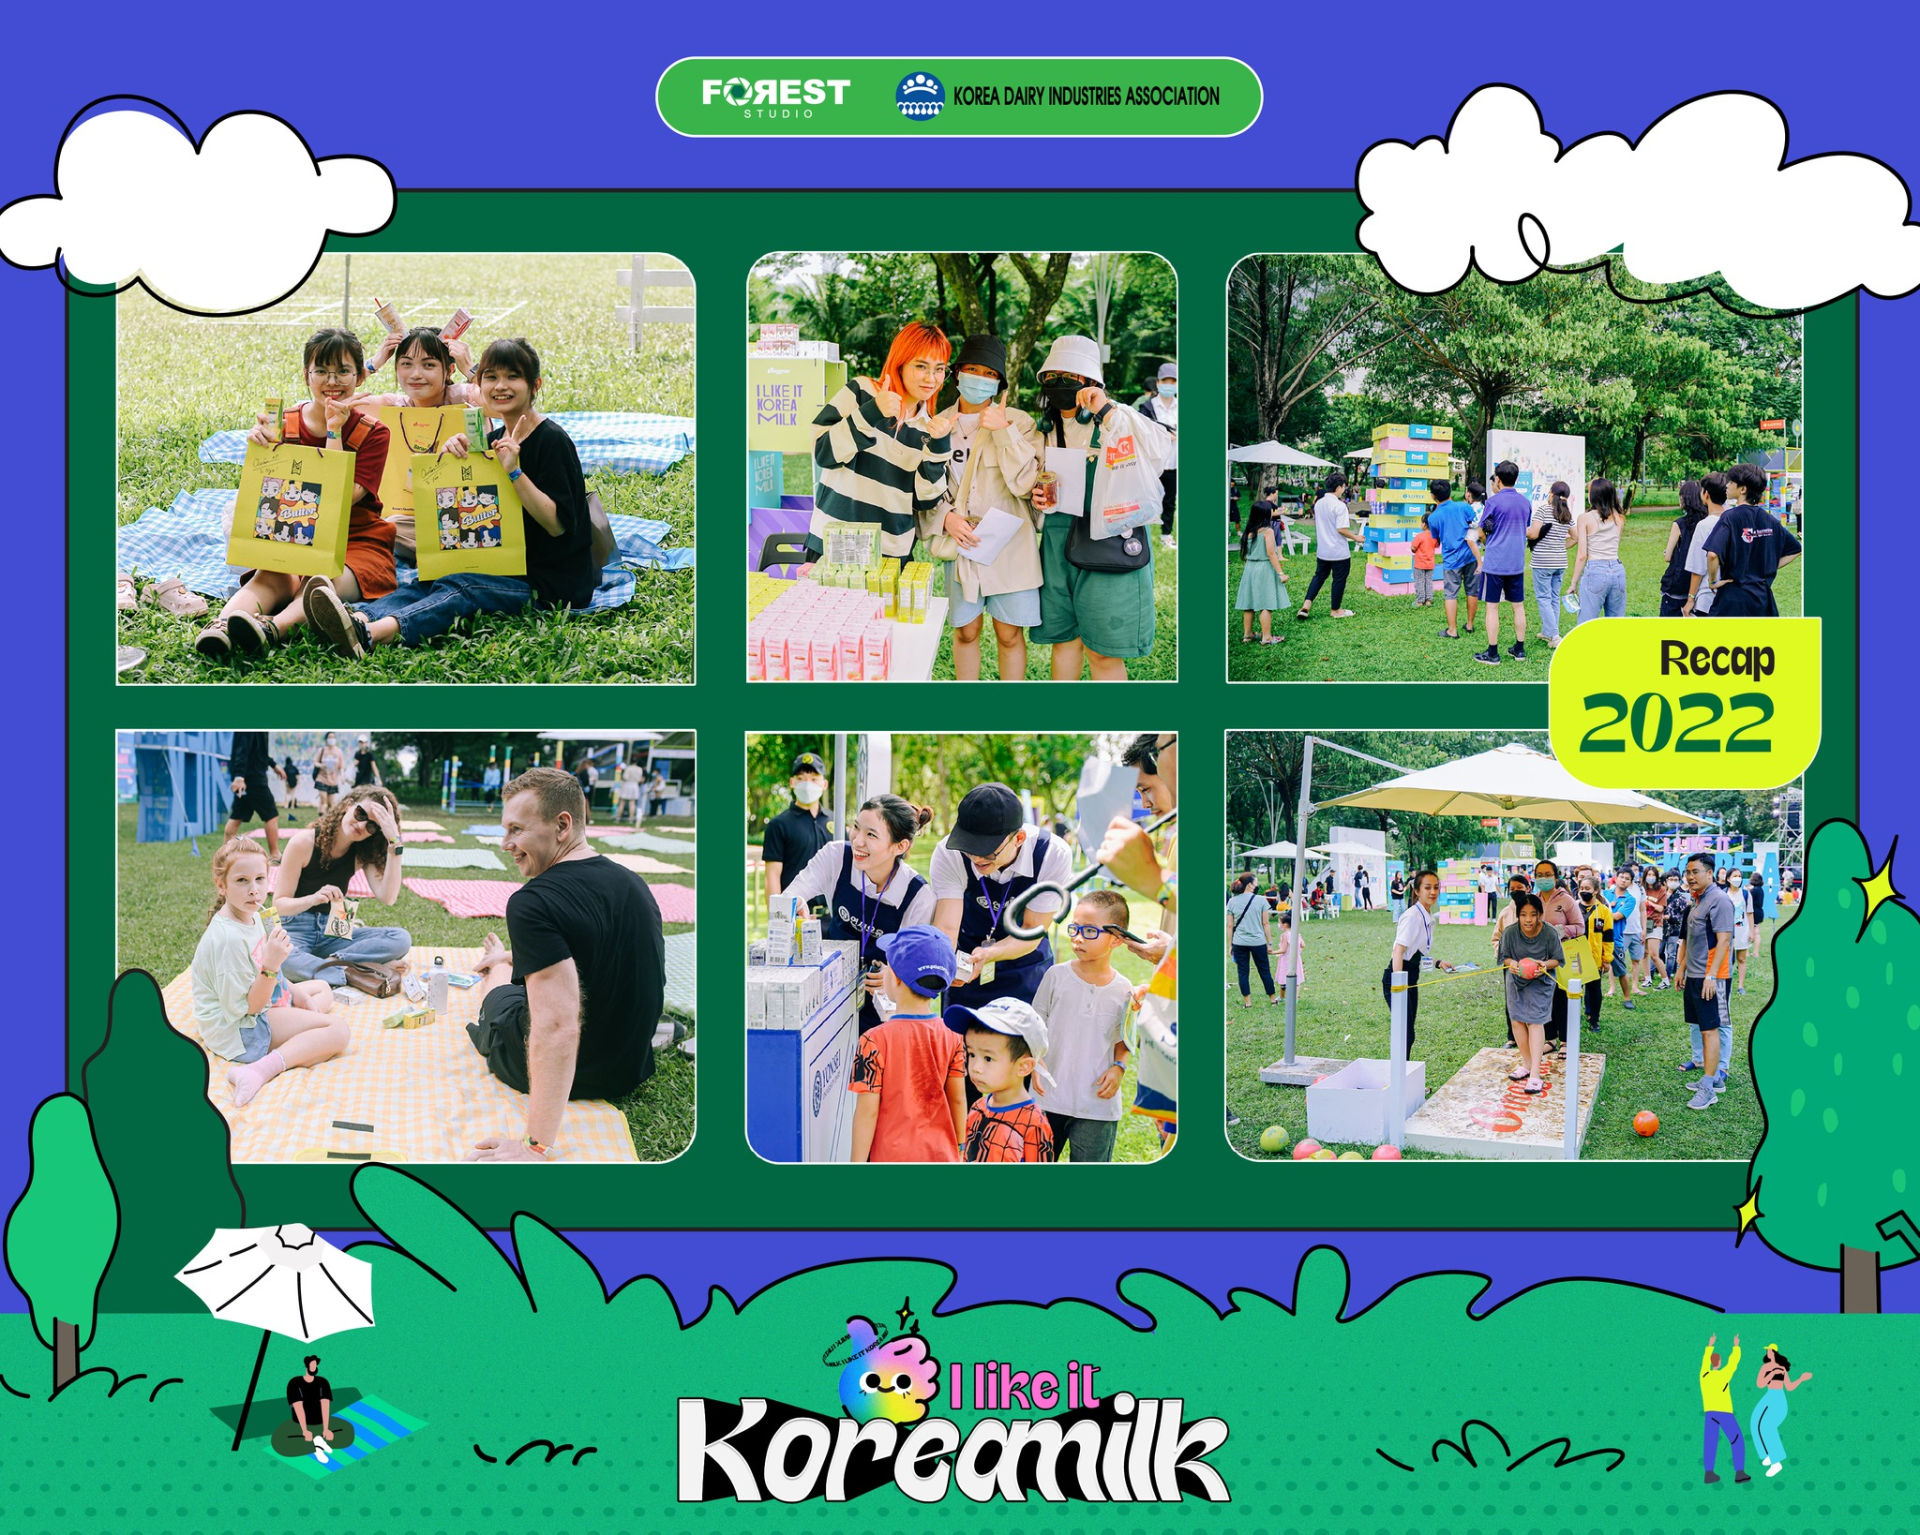 Korea Milk Playground, bữa tiệc âm nhạc ngoài trời đầy mới mẻ và thú vị. theo phong cách glamping cực kì hot với giới trẻ.